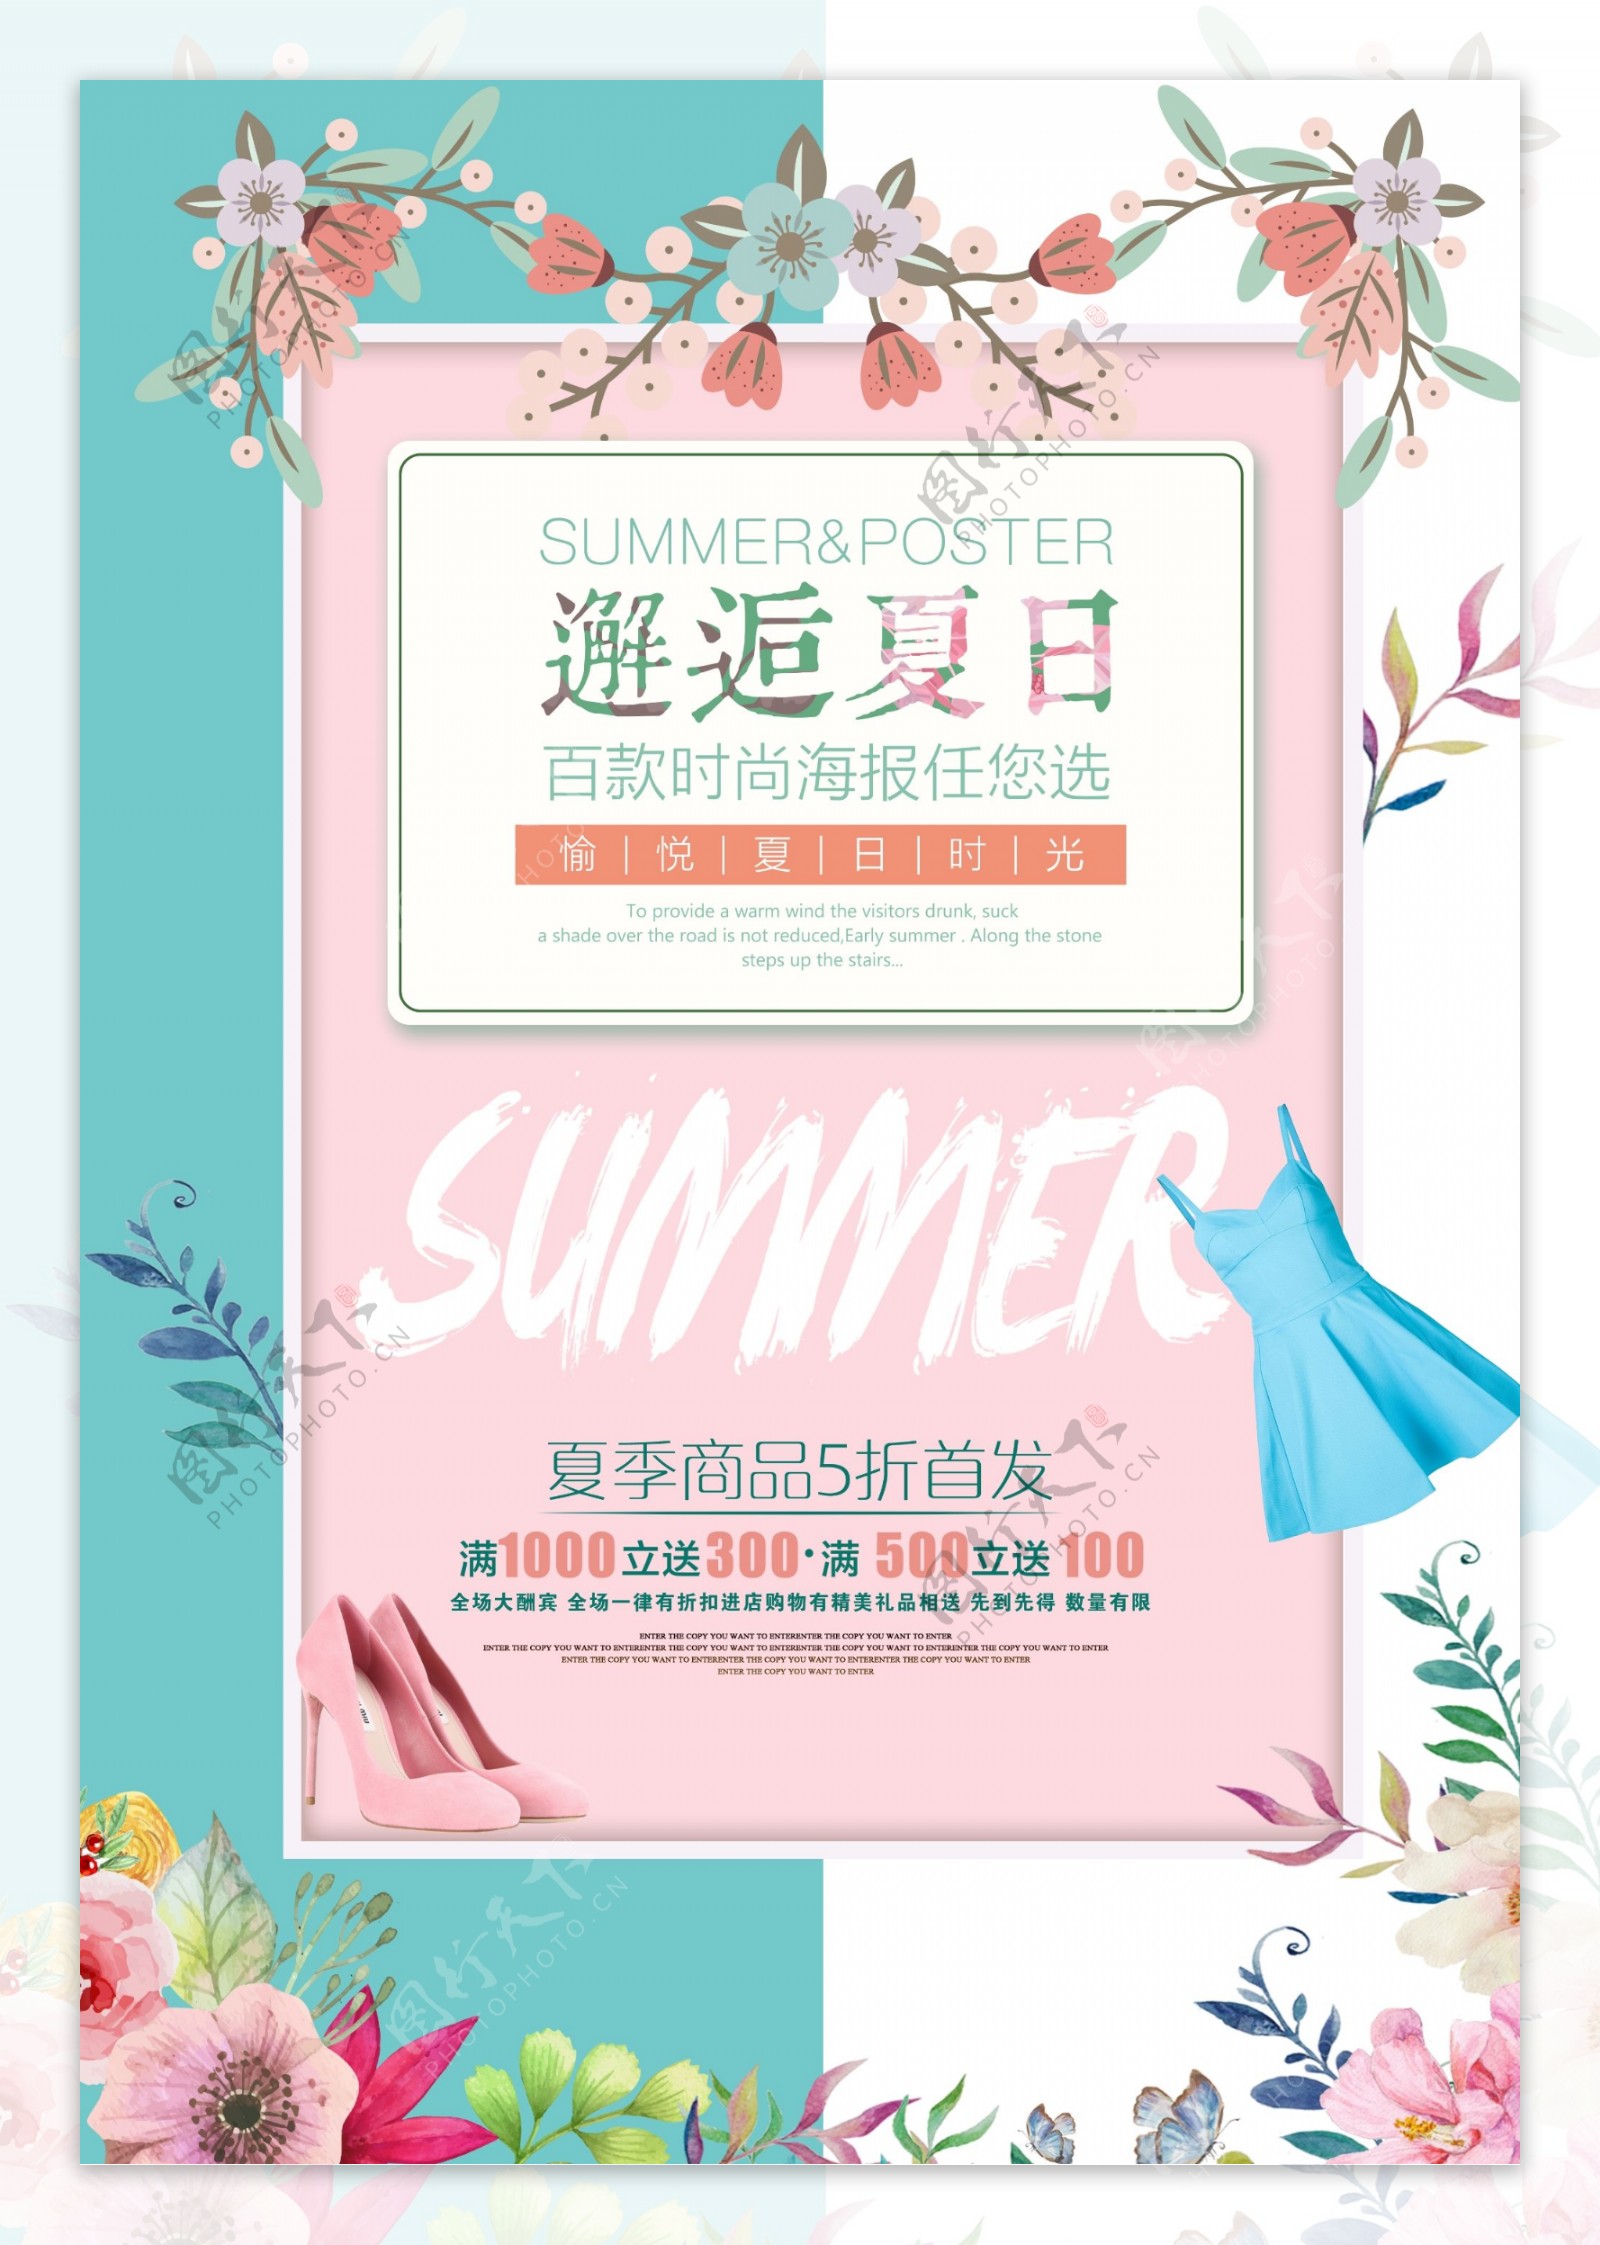 夏日清凉商品促销海报设计PSD